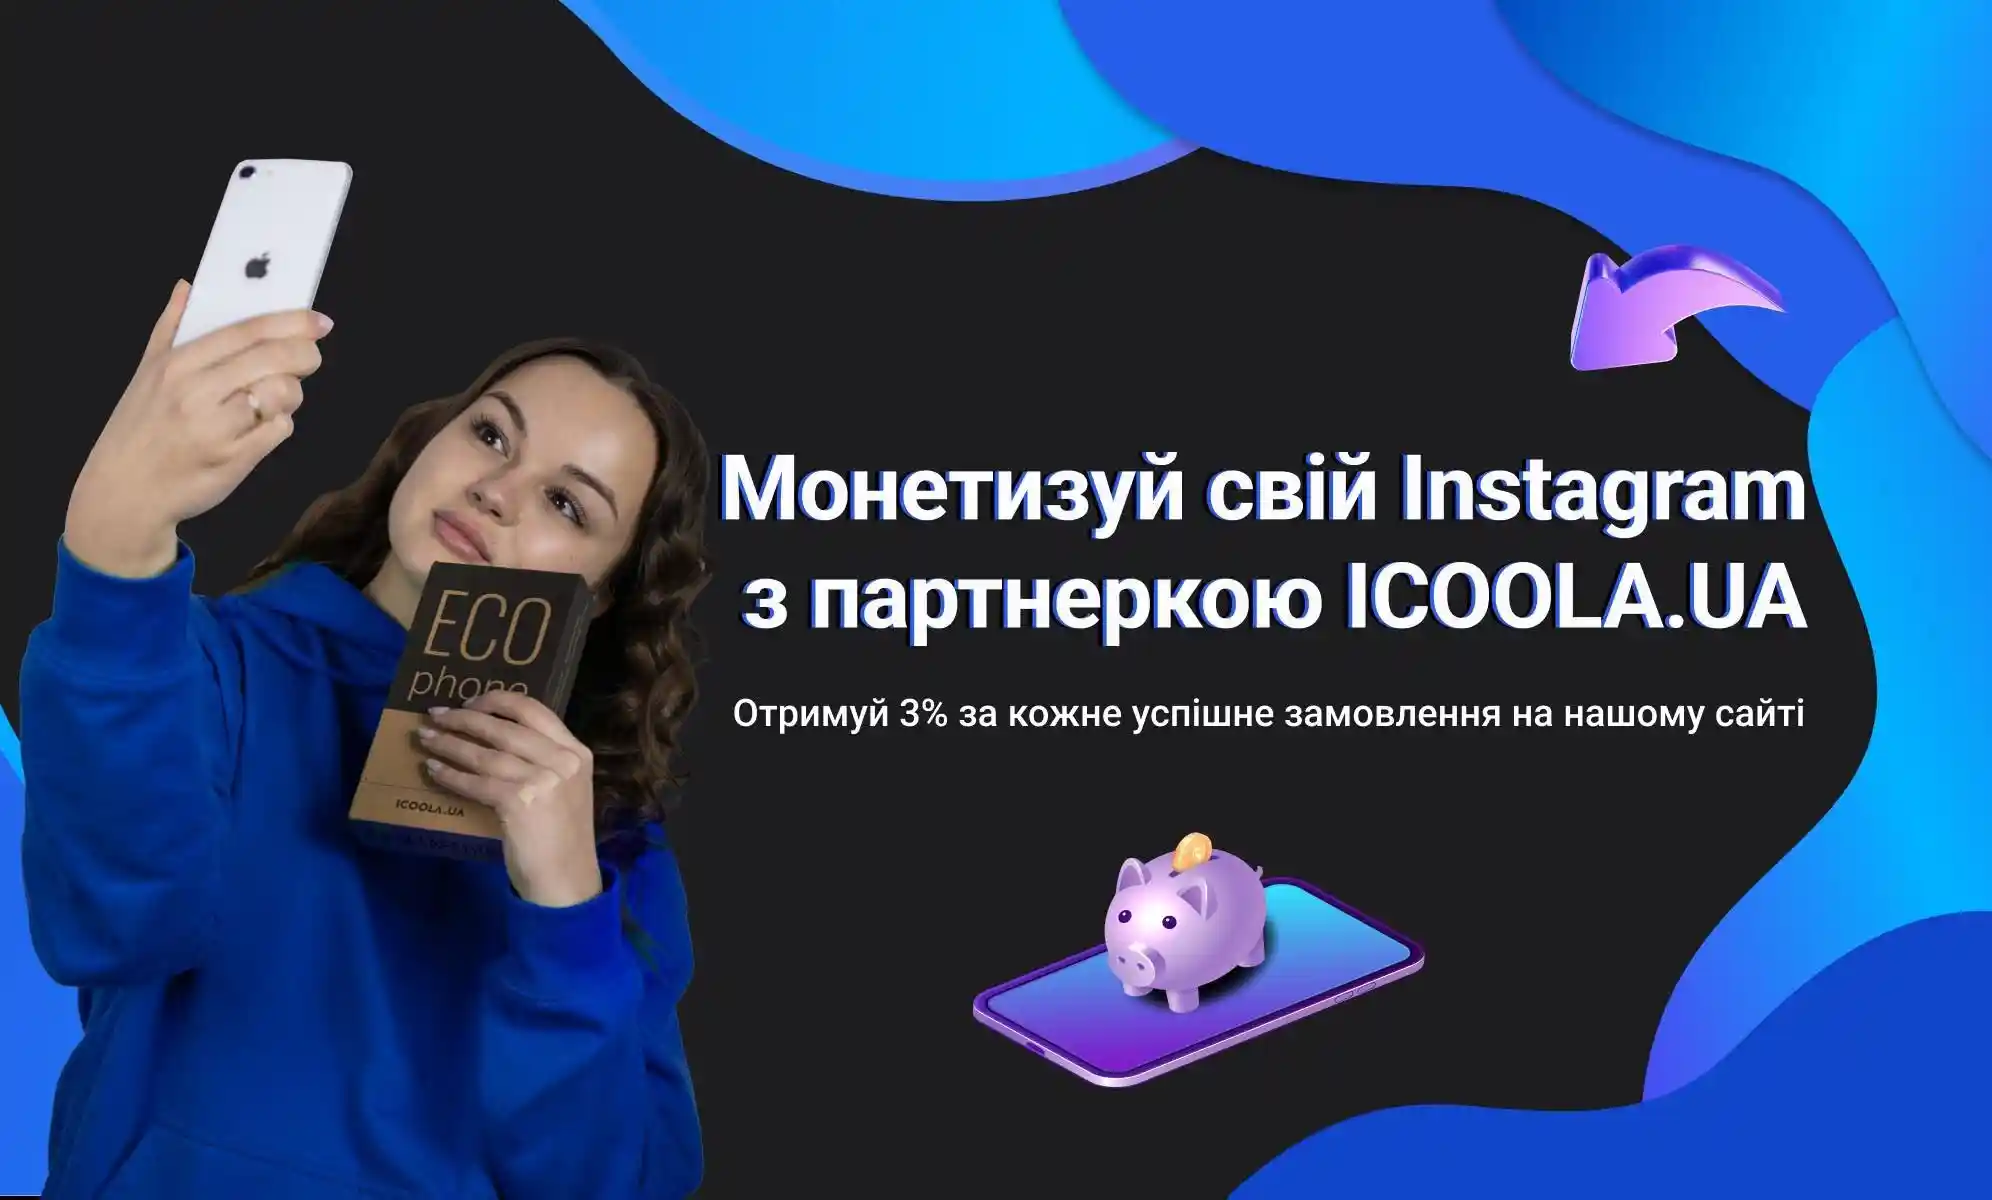 Партнерская программа для инстаграм блогеров от ICOOLA.UA